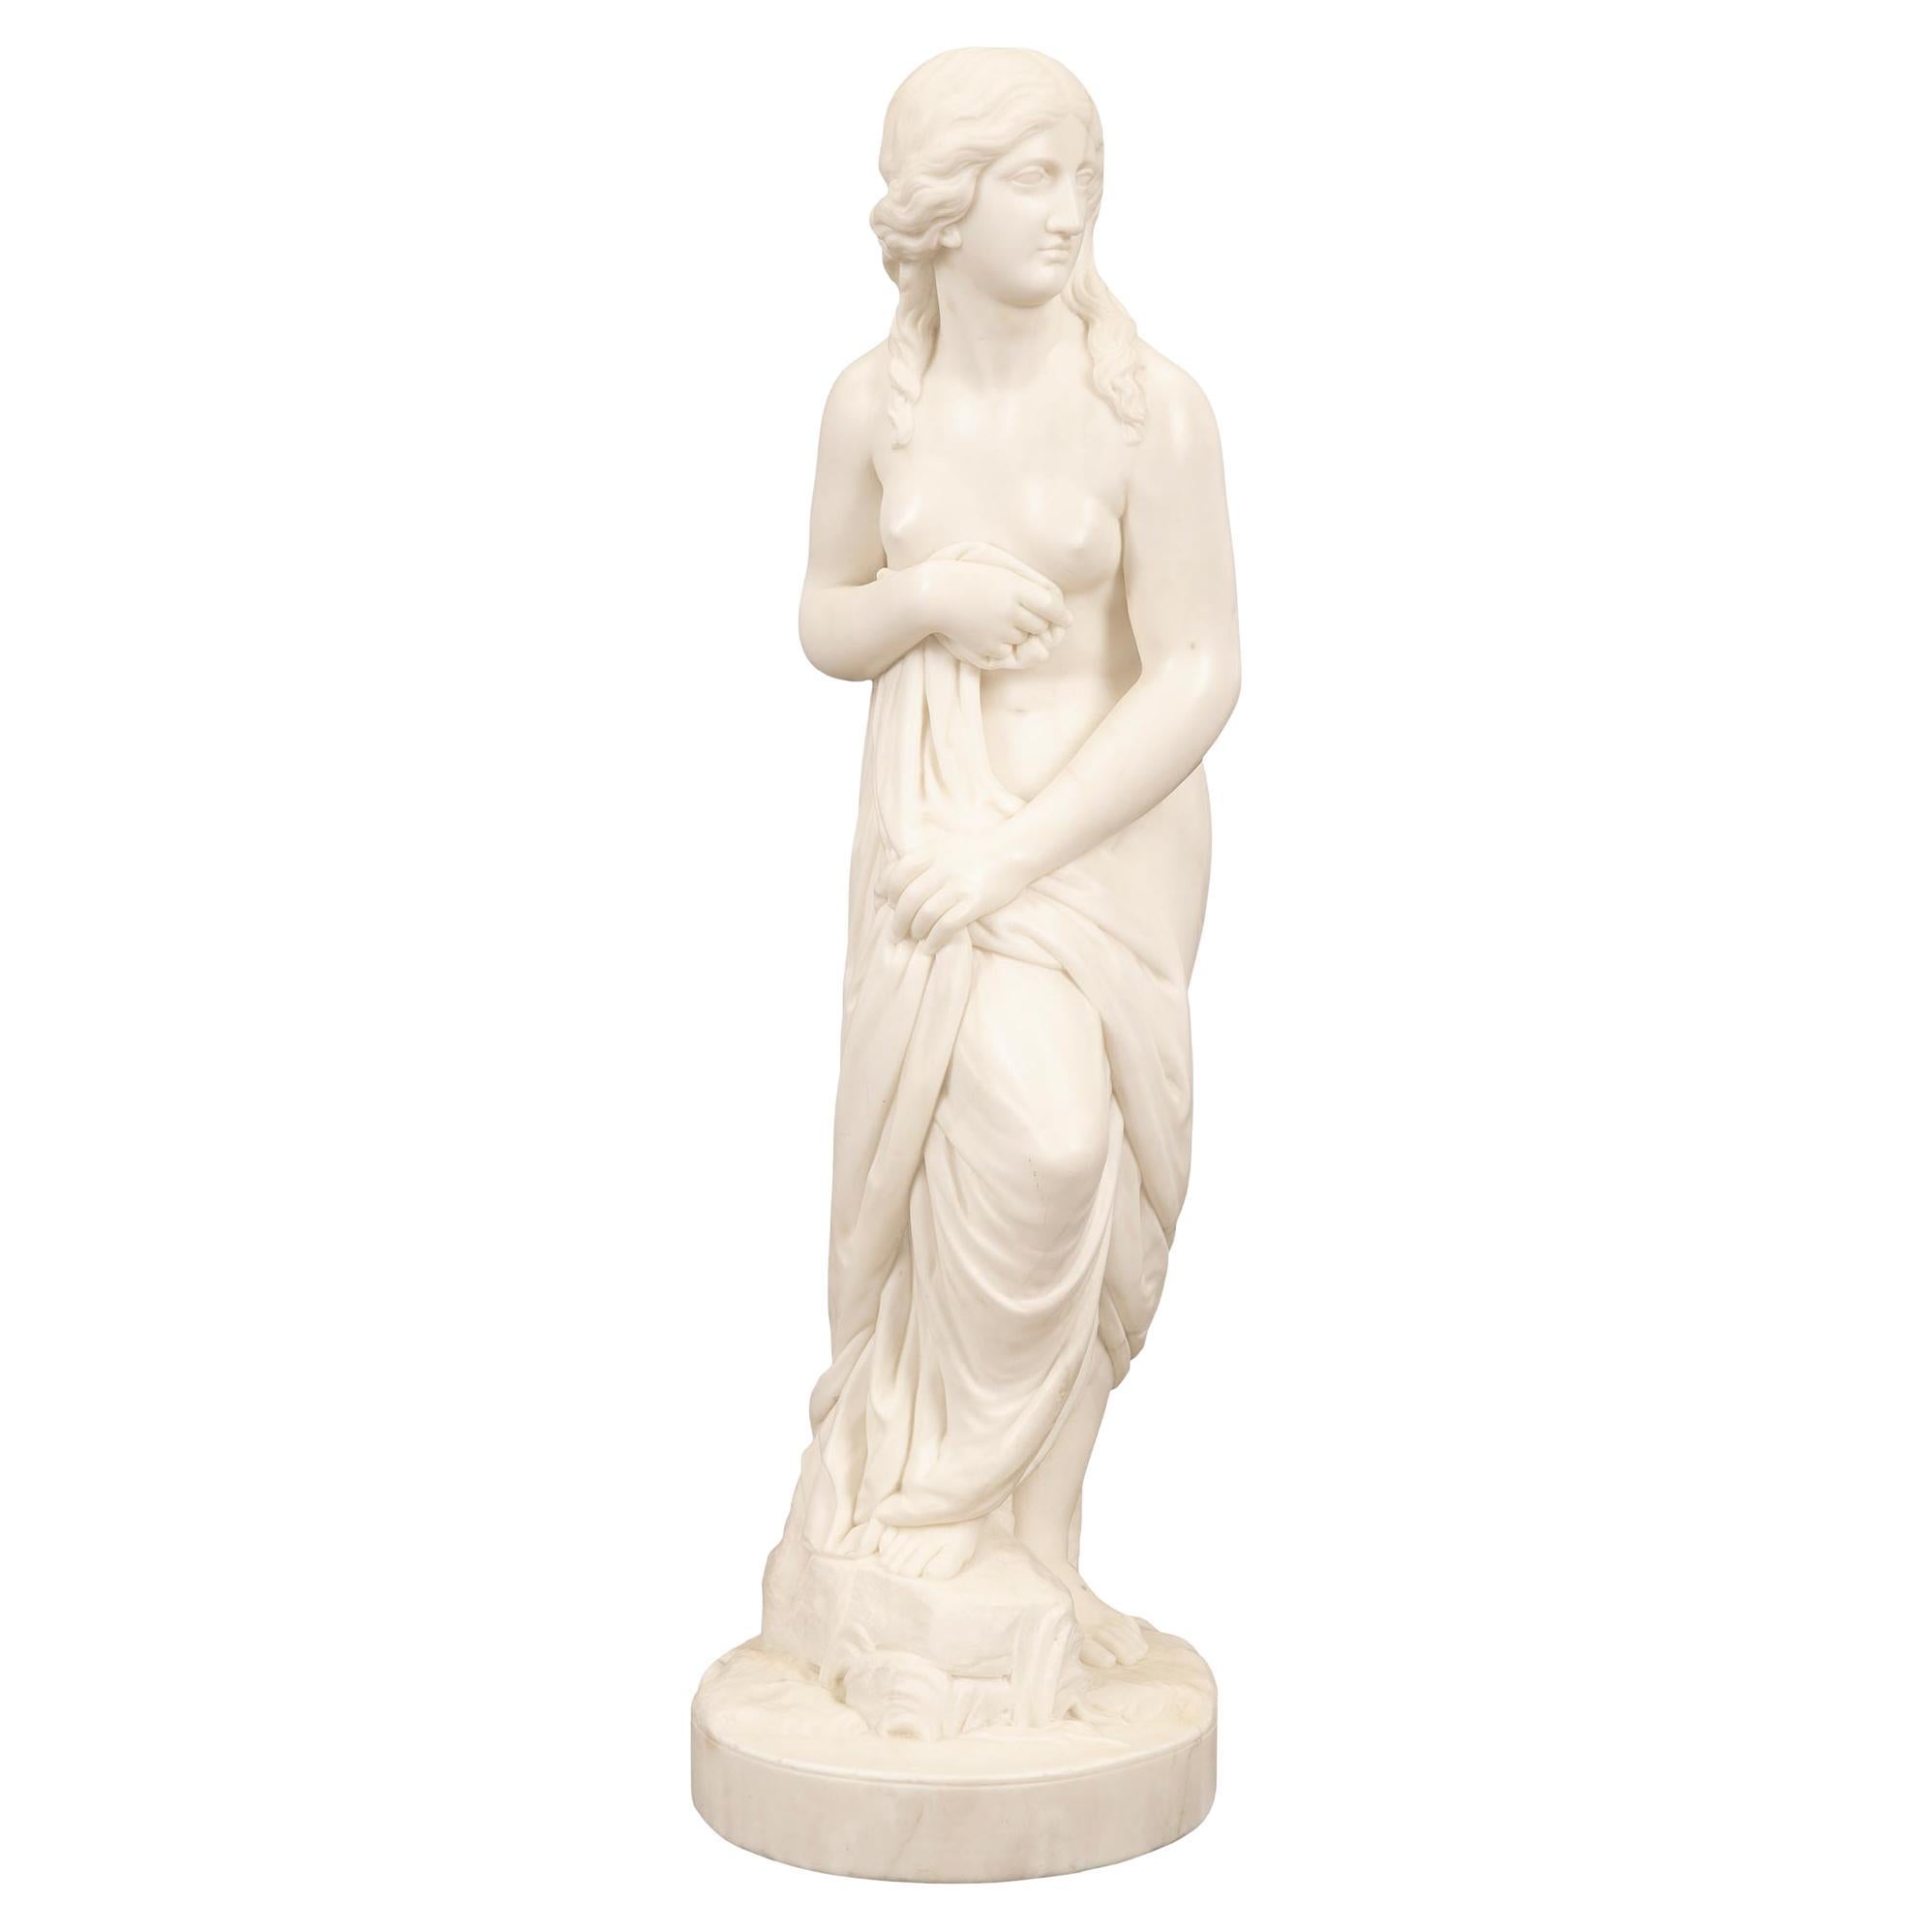 Italian 19th Century Neoclassical St. Marble Statue Of “La Baigneuse”